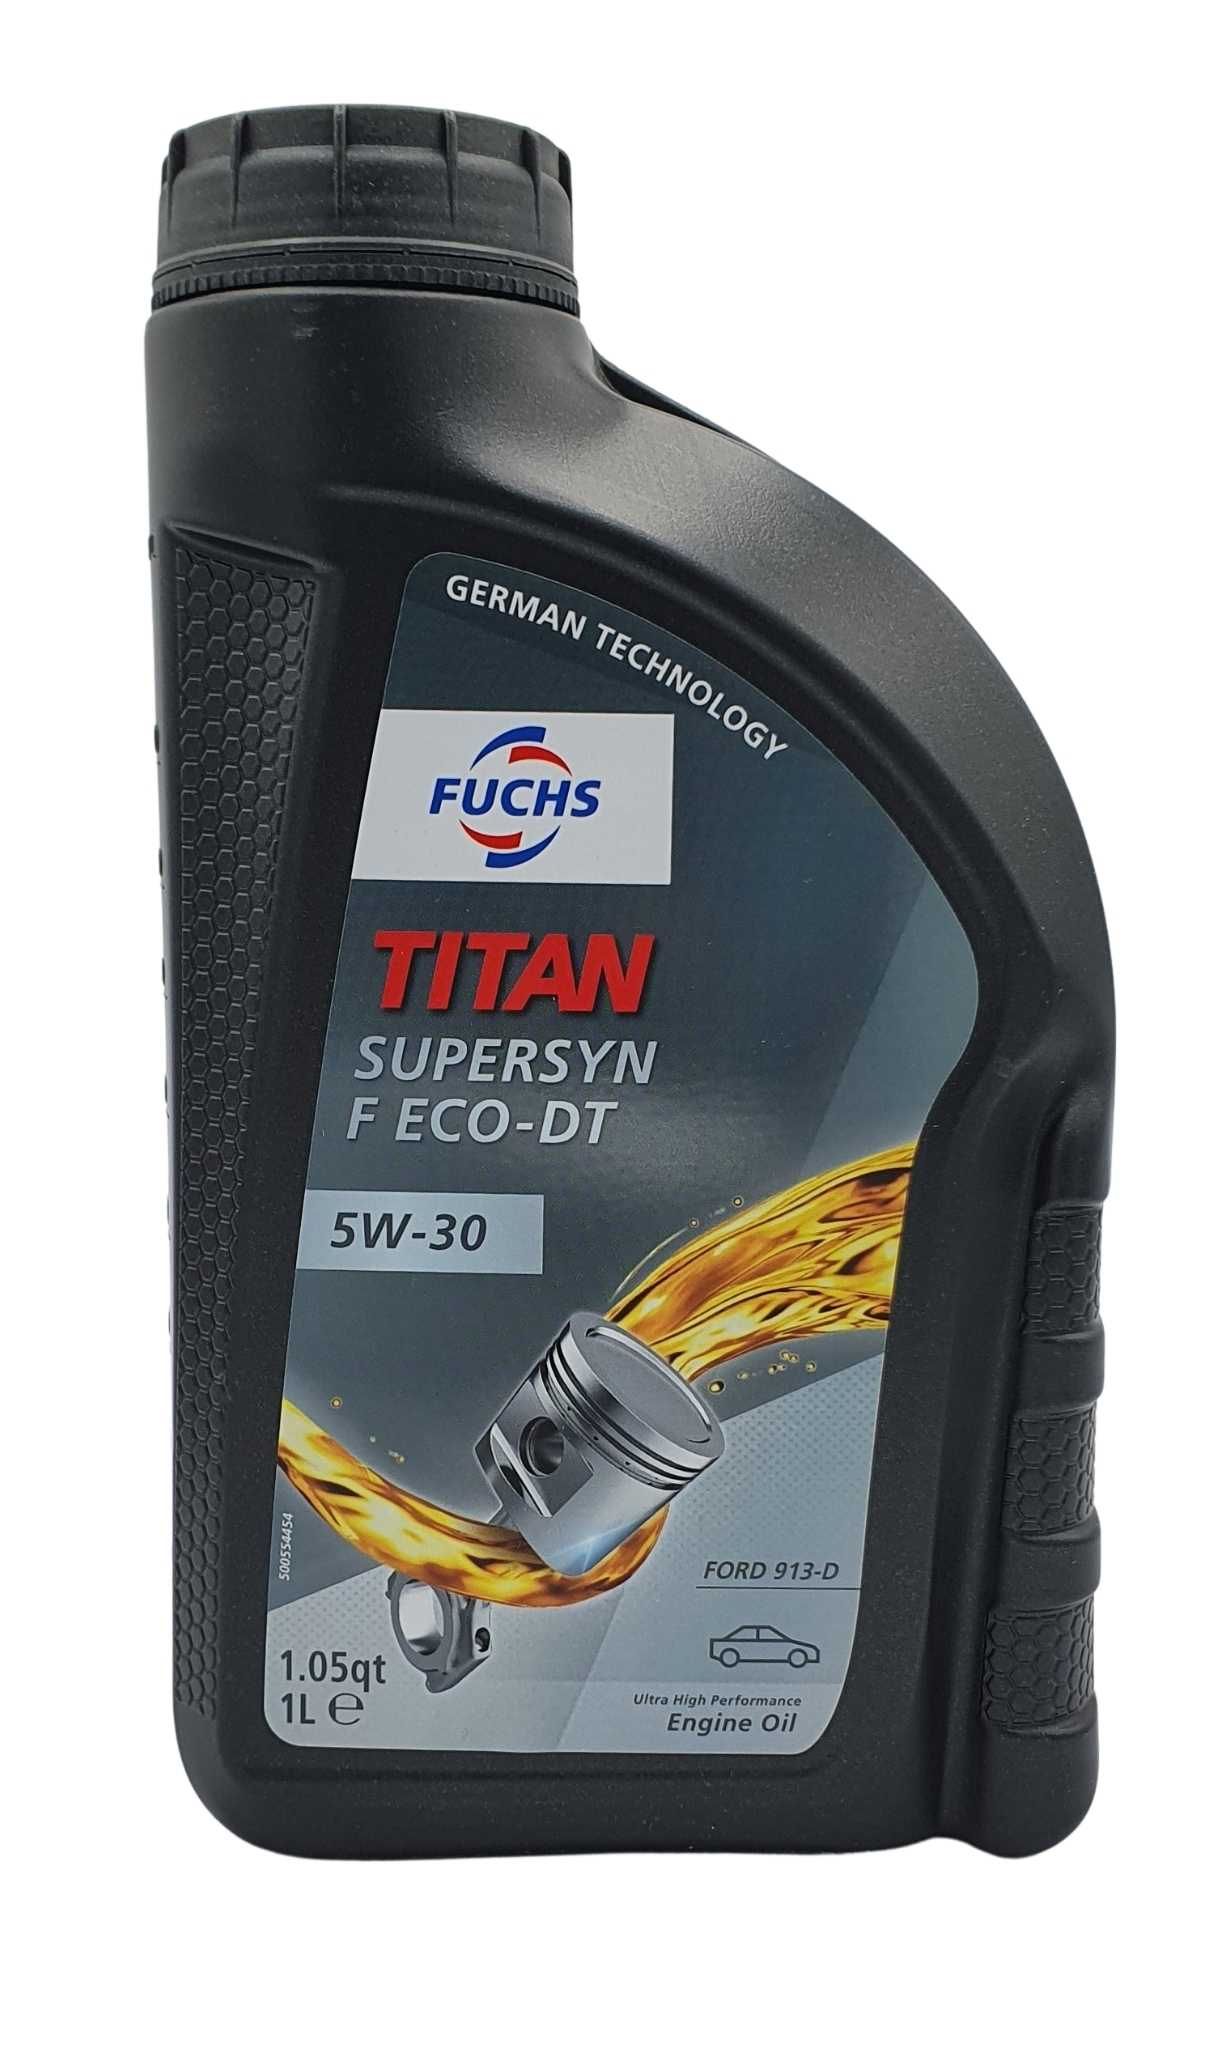 Fuchs Titan Supersyn F Eco-DT 5W-30 1 Liter